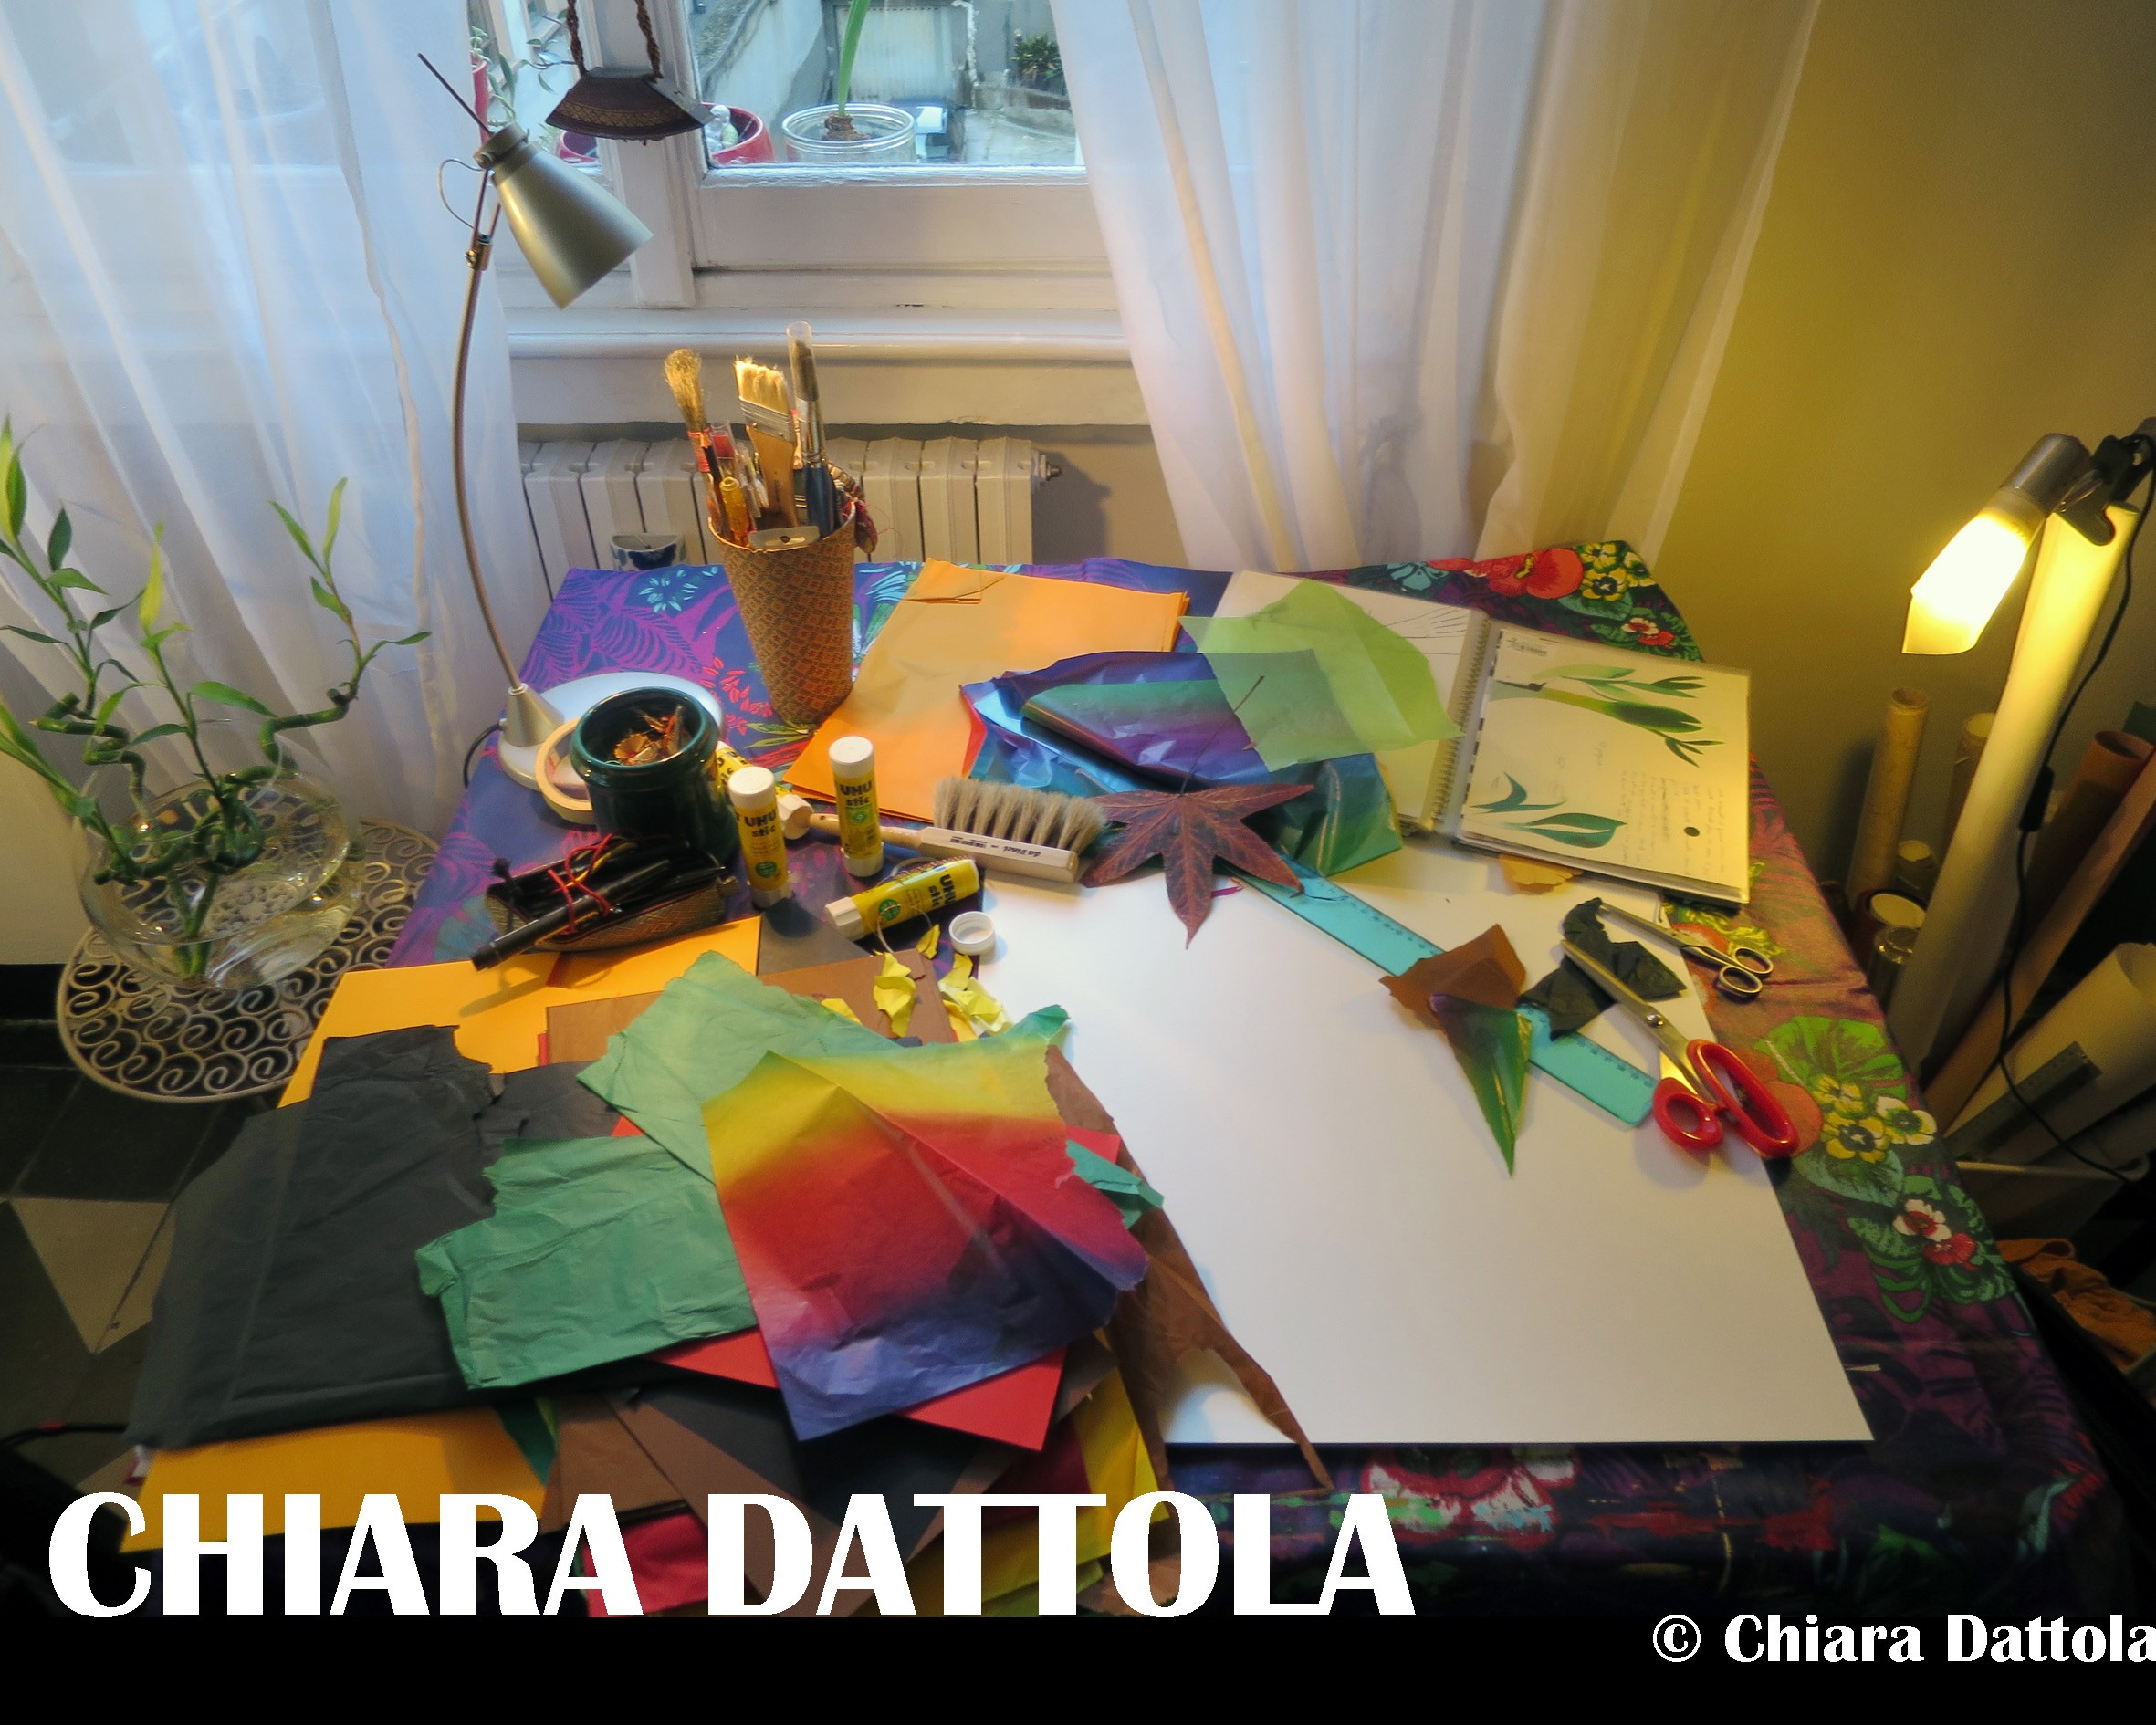 Chiara Dattola